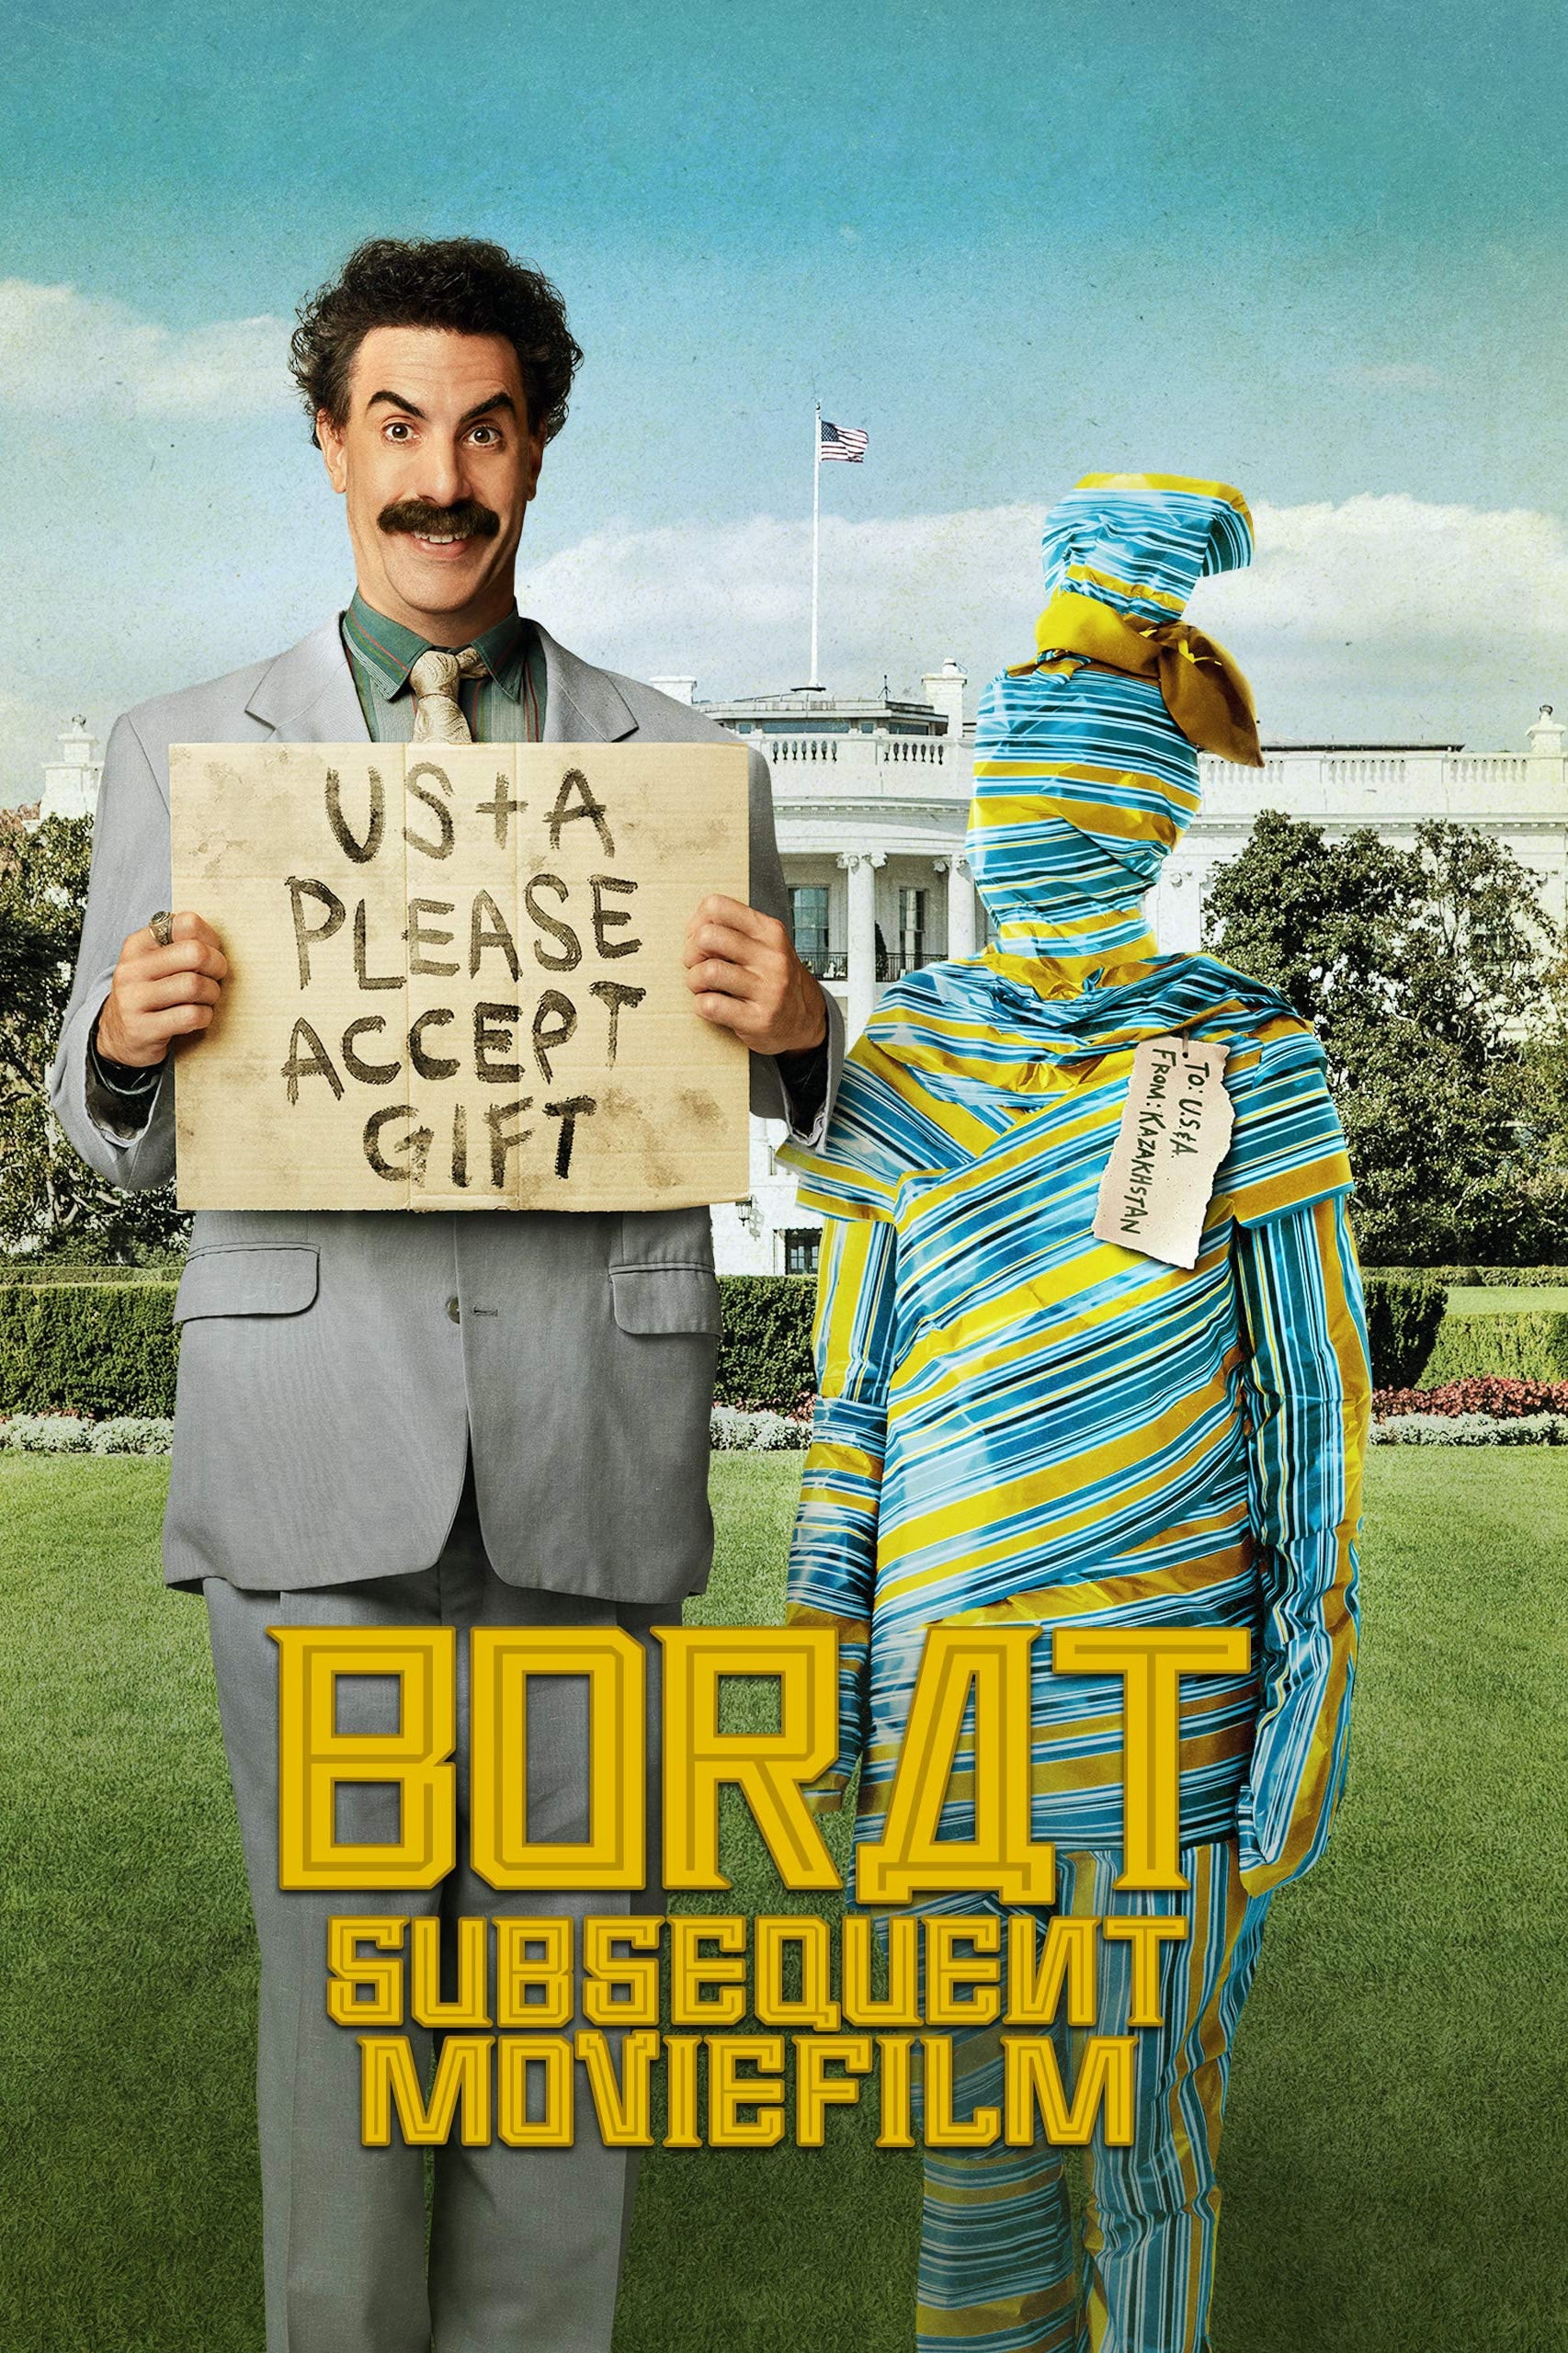 Borat: Subsequent Movie film